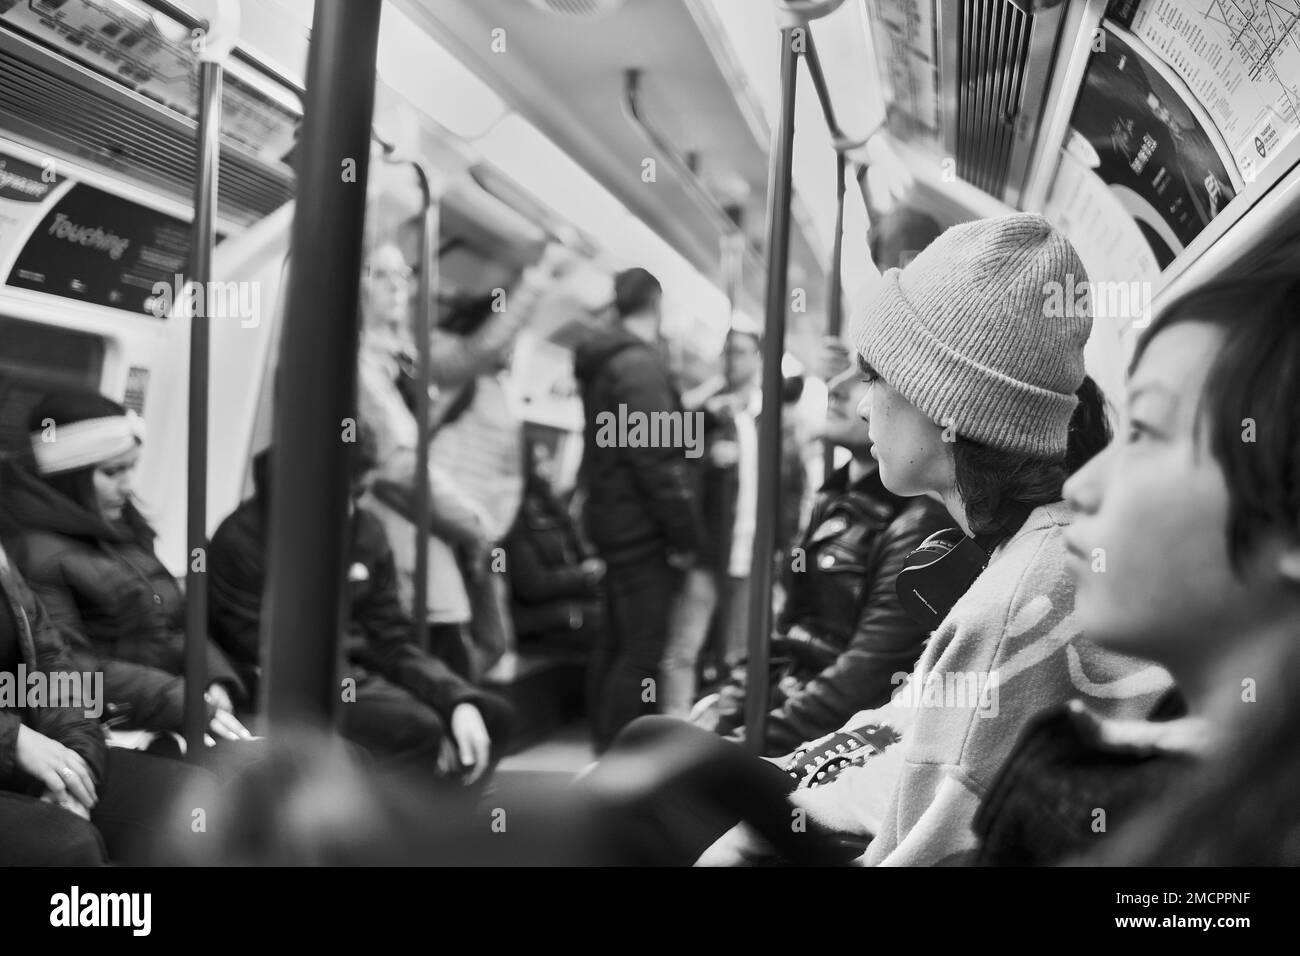 Schwarzweiß, natürliche Aufnahme von Passagieren in der Londoner U-Bahn, in einem belebten Zugwaggon; unglückliche Pendler stehen und sitzen, keine Interaktion Stockfoto